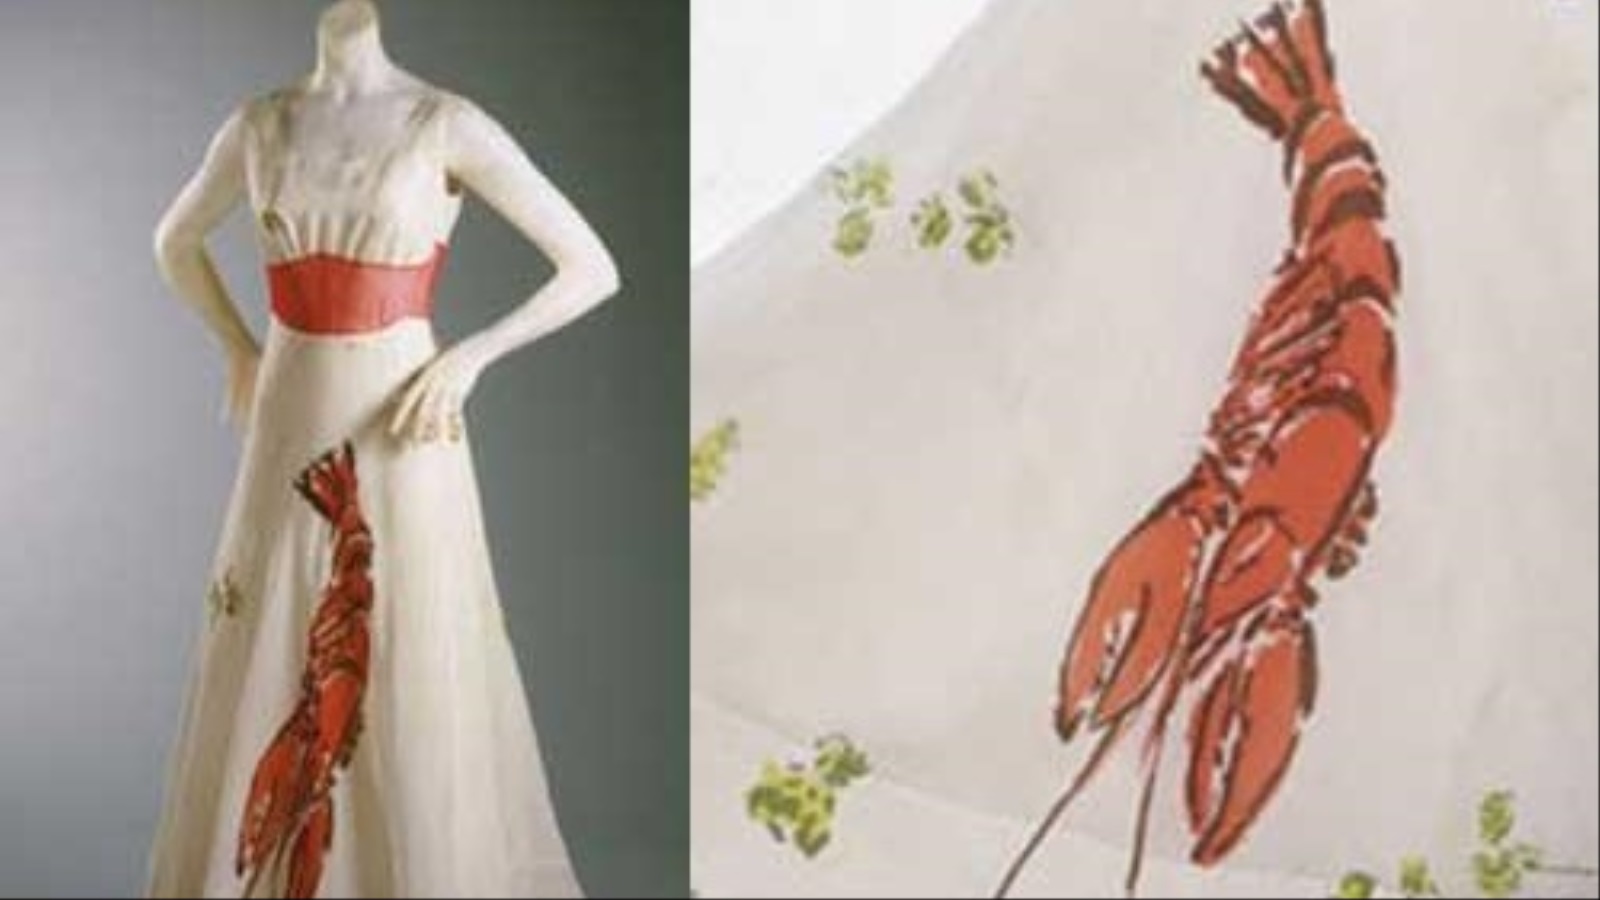 كان دالي مصدر إلهام كبير لشيفاريللي في العديد من التصميمات خاصة فستان سرطان البحر الشهير (مواقع التواصل)